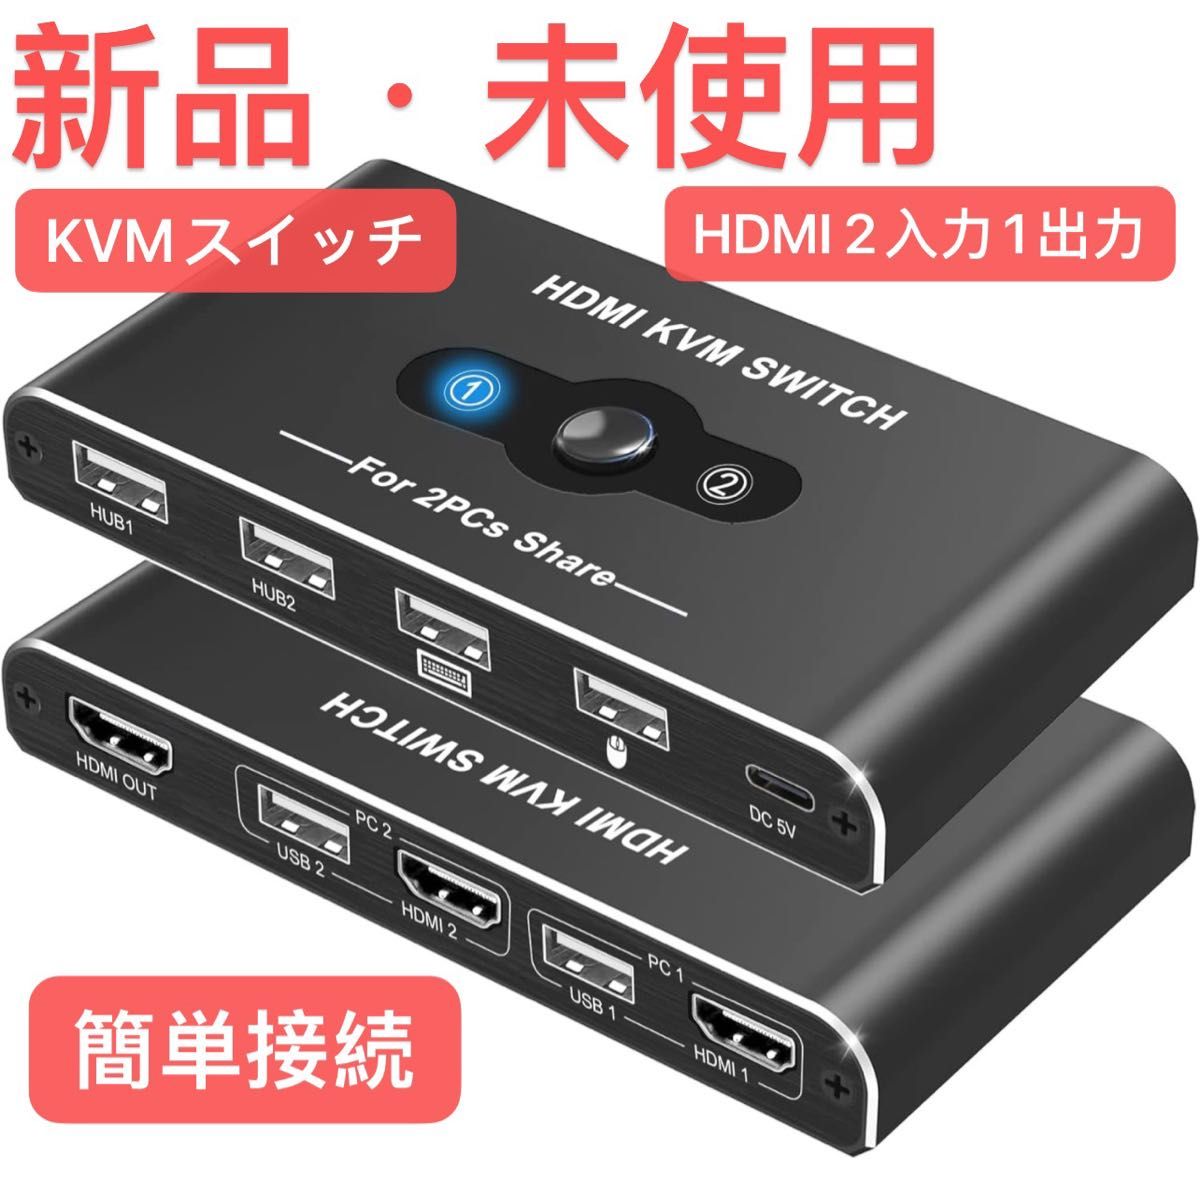 KVMスイッチ HDMI 2入力1出力 Movcle KVM USB 切替器 パソコン2台 キーボード/マウス/ディスプレイ